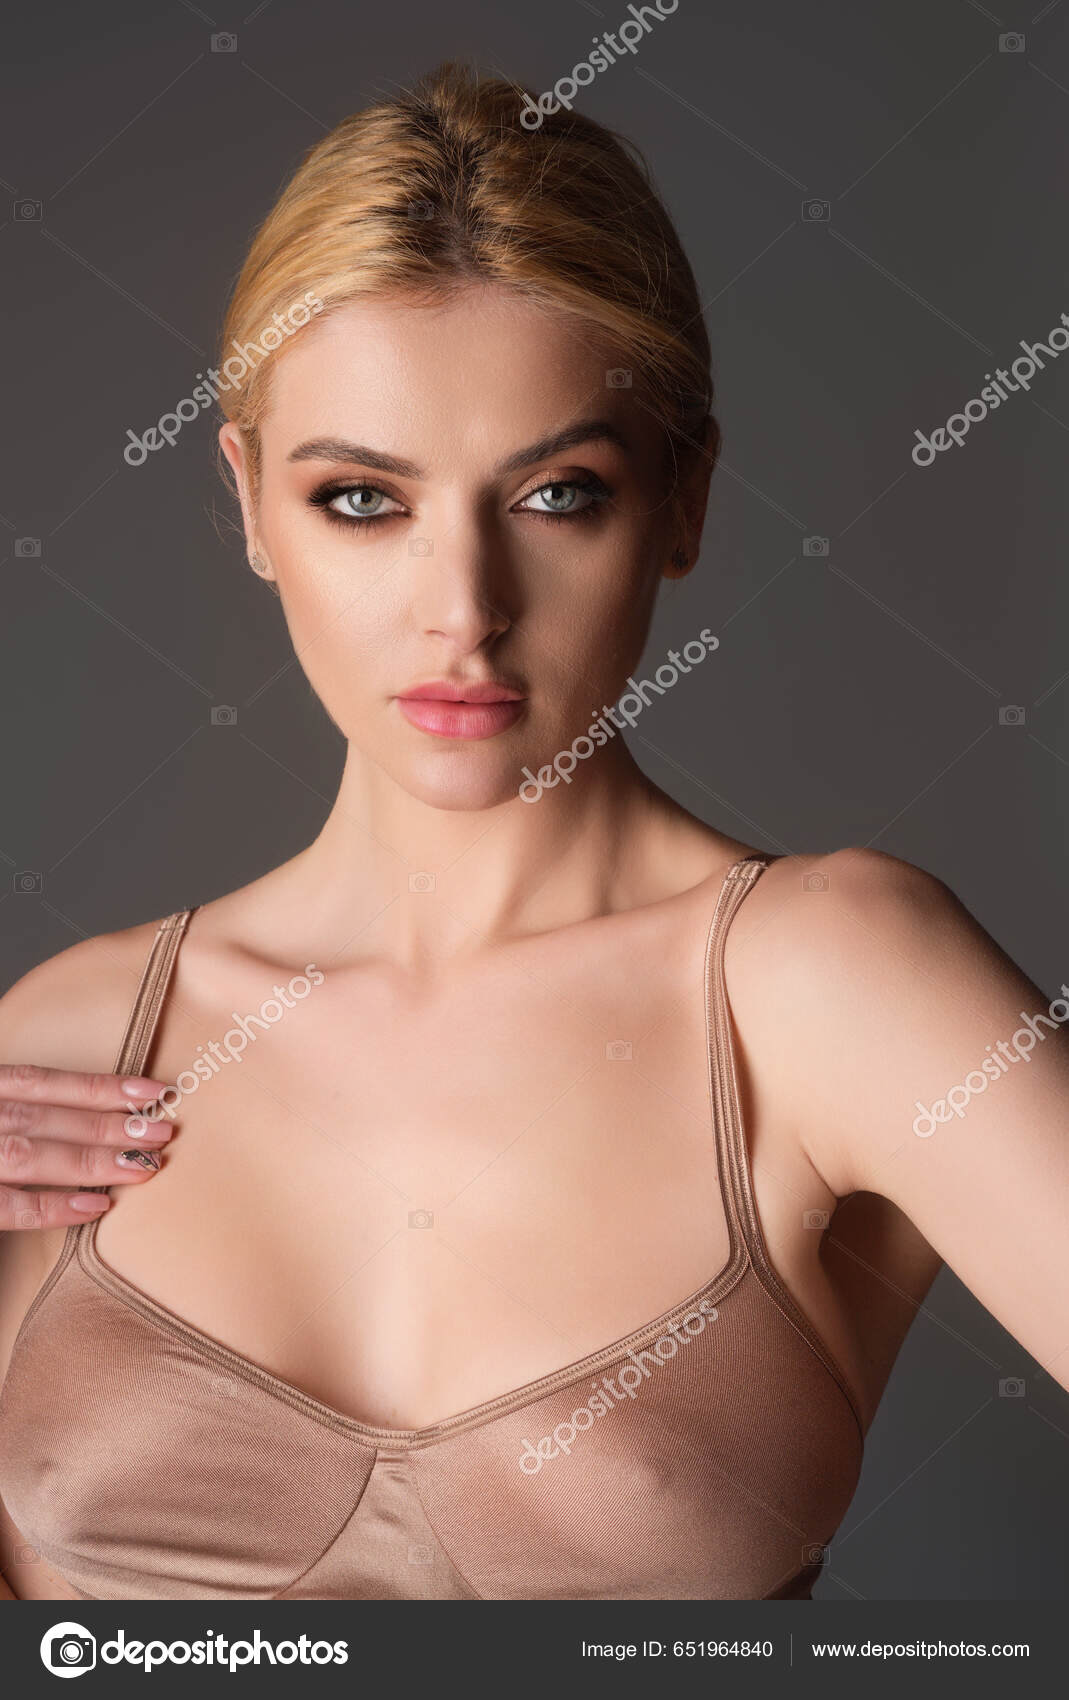 Black Bra Natural Boobs Tits Bra Model Sensual Elegant Young